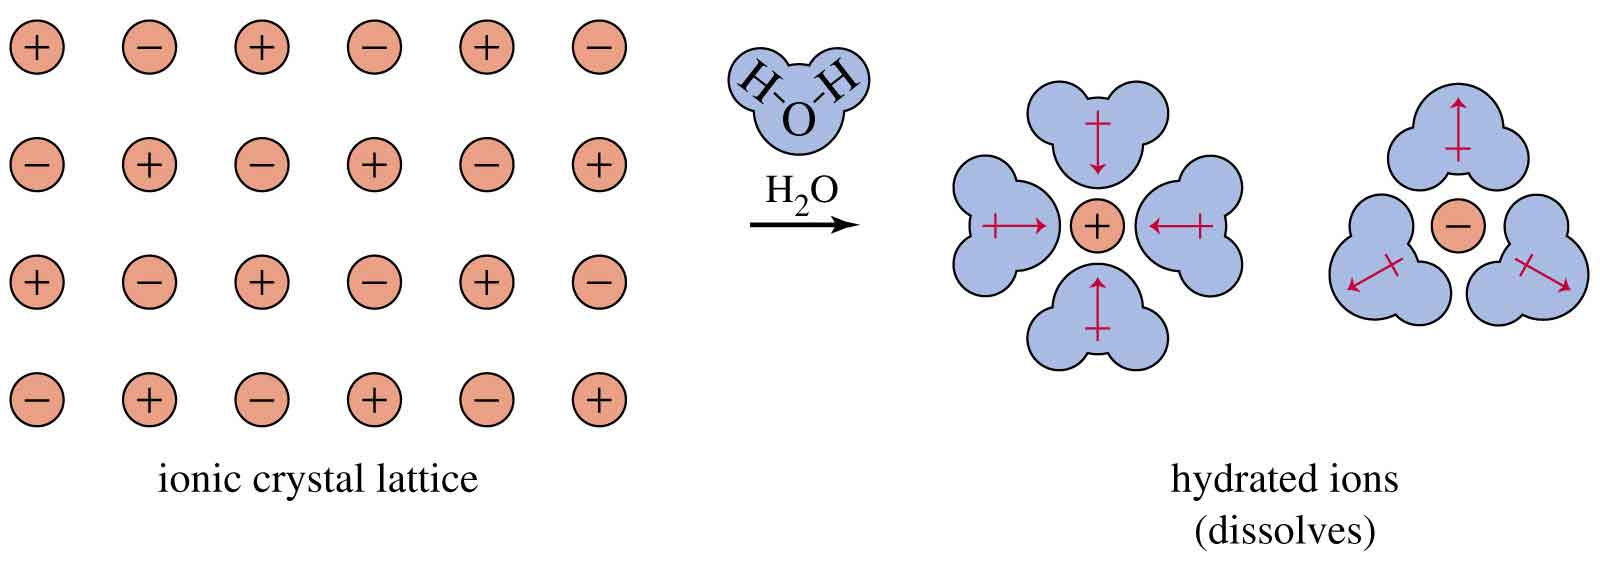 ) Interacción ion-dipolo Se produce entre un ion y una molécula neutra polar.